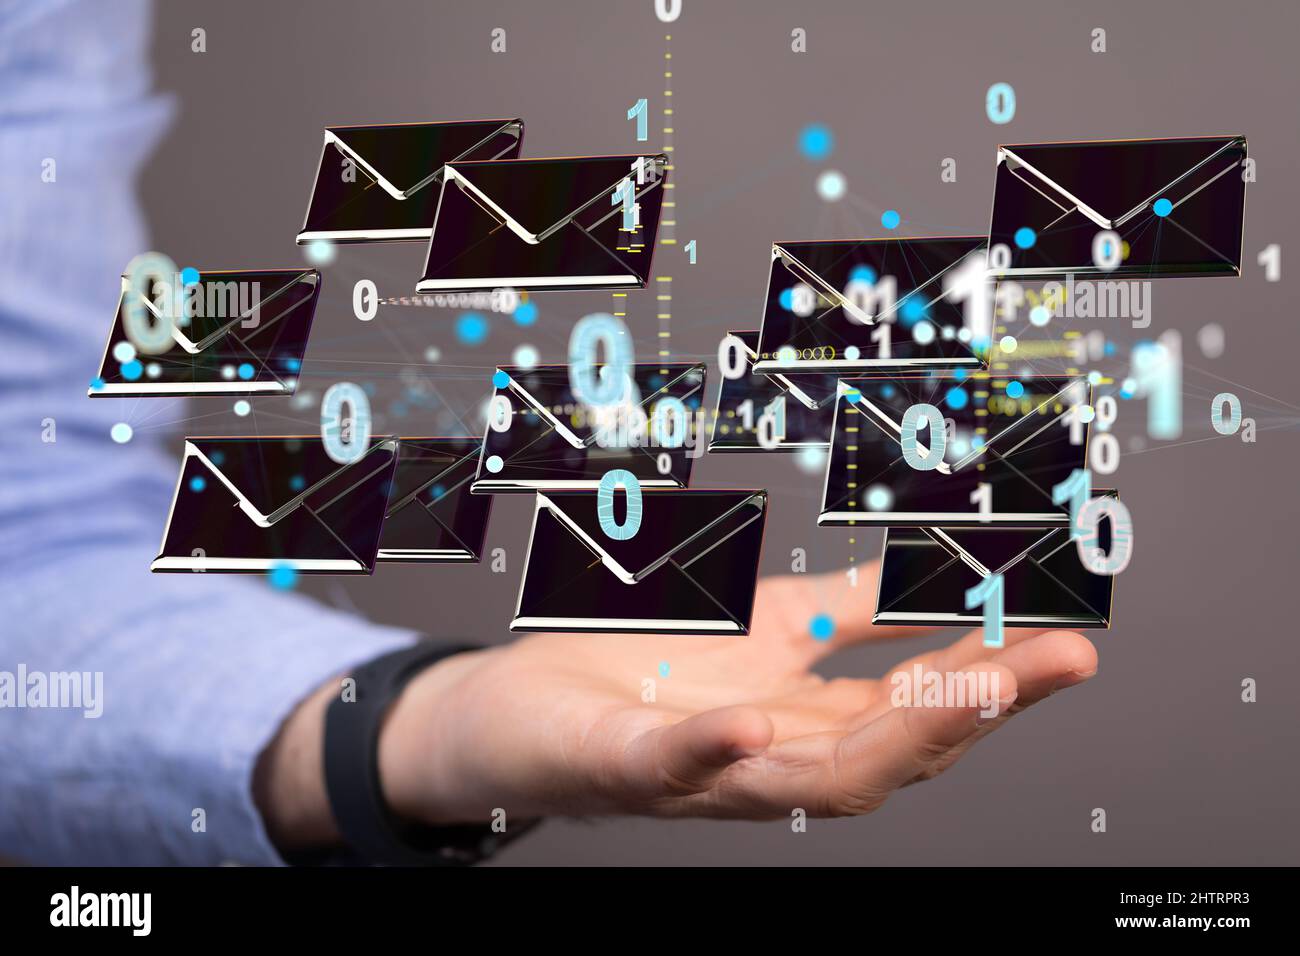 3D le rendu des e-mails et des messages indésirables approuvés s'affiche sur une interface futuriste flottante Banque D'Images